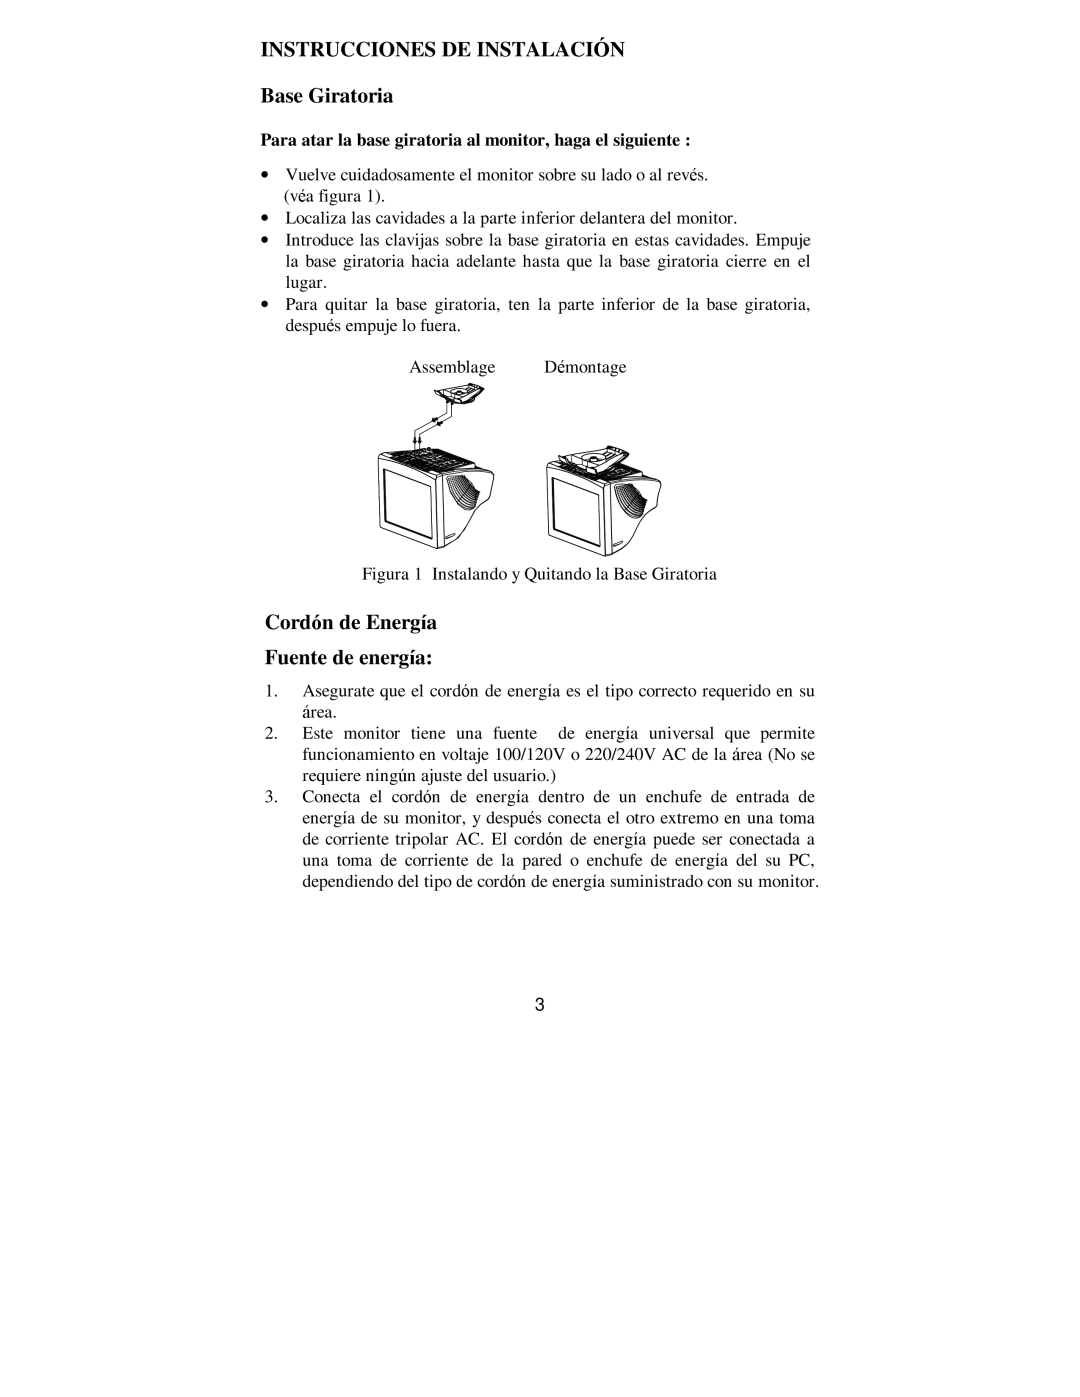 Philips 107E69 manual INSTRUCCIONES DE INSTALACIÓN Base Giratoria, Cordón de Energía Fuente de energía 